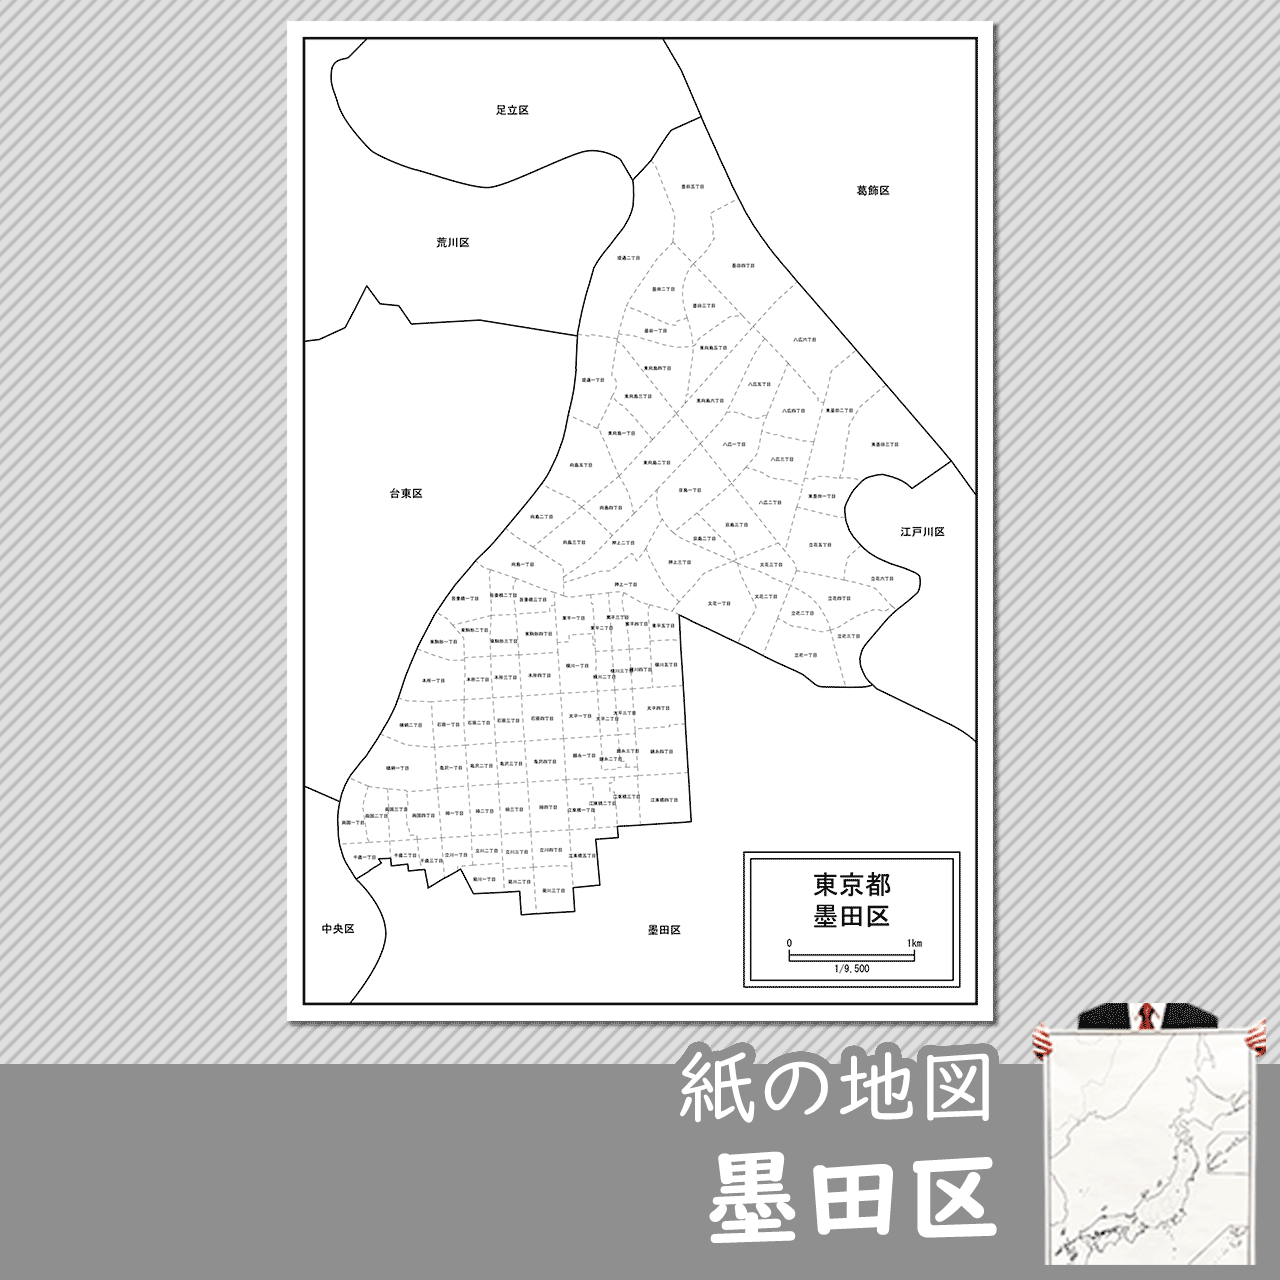 東京都墨田区の紙の白地図のサムネイル